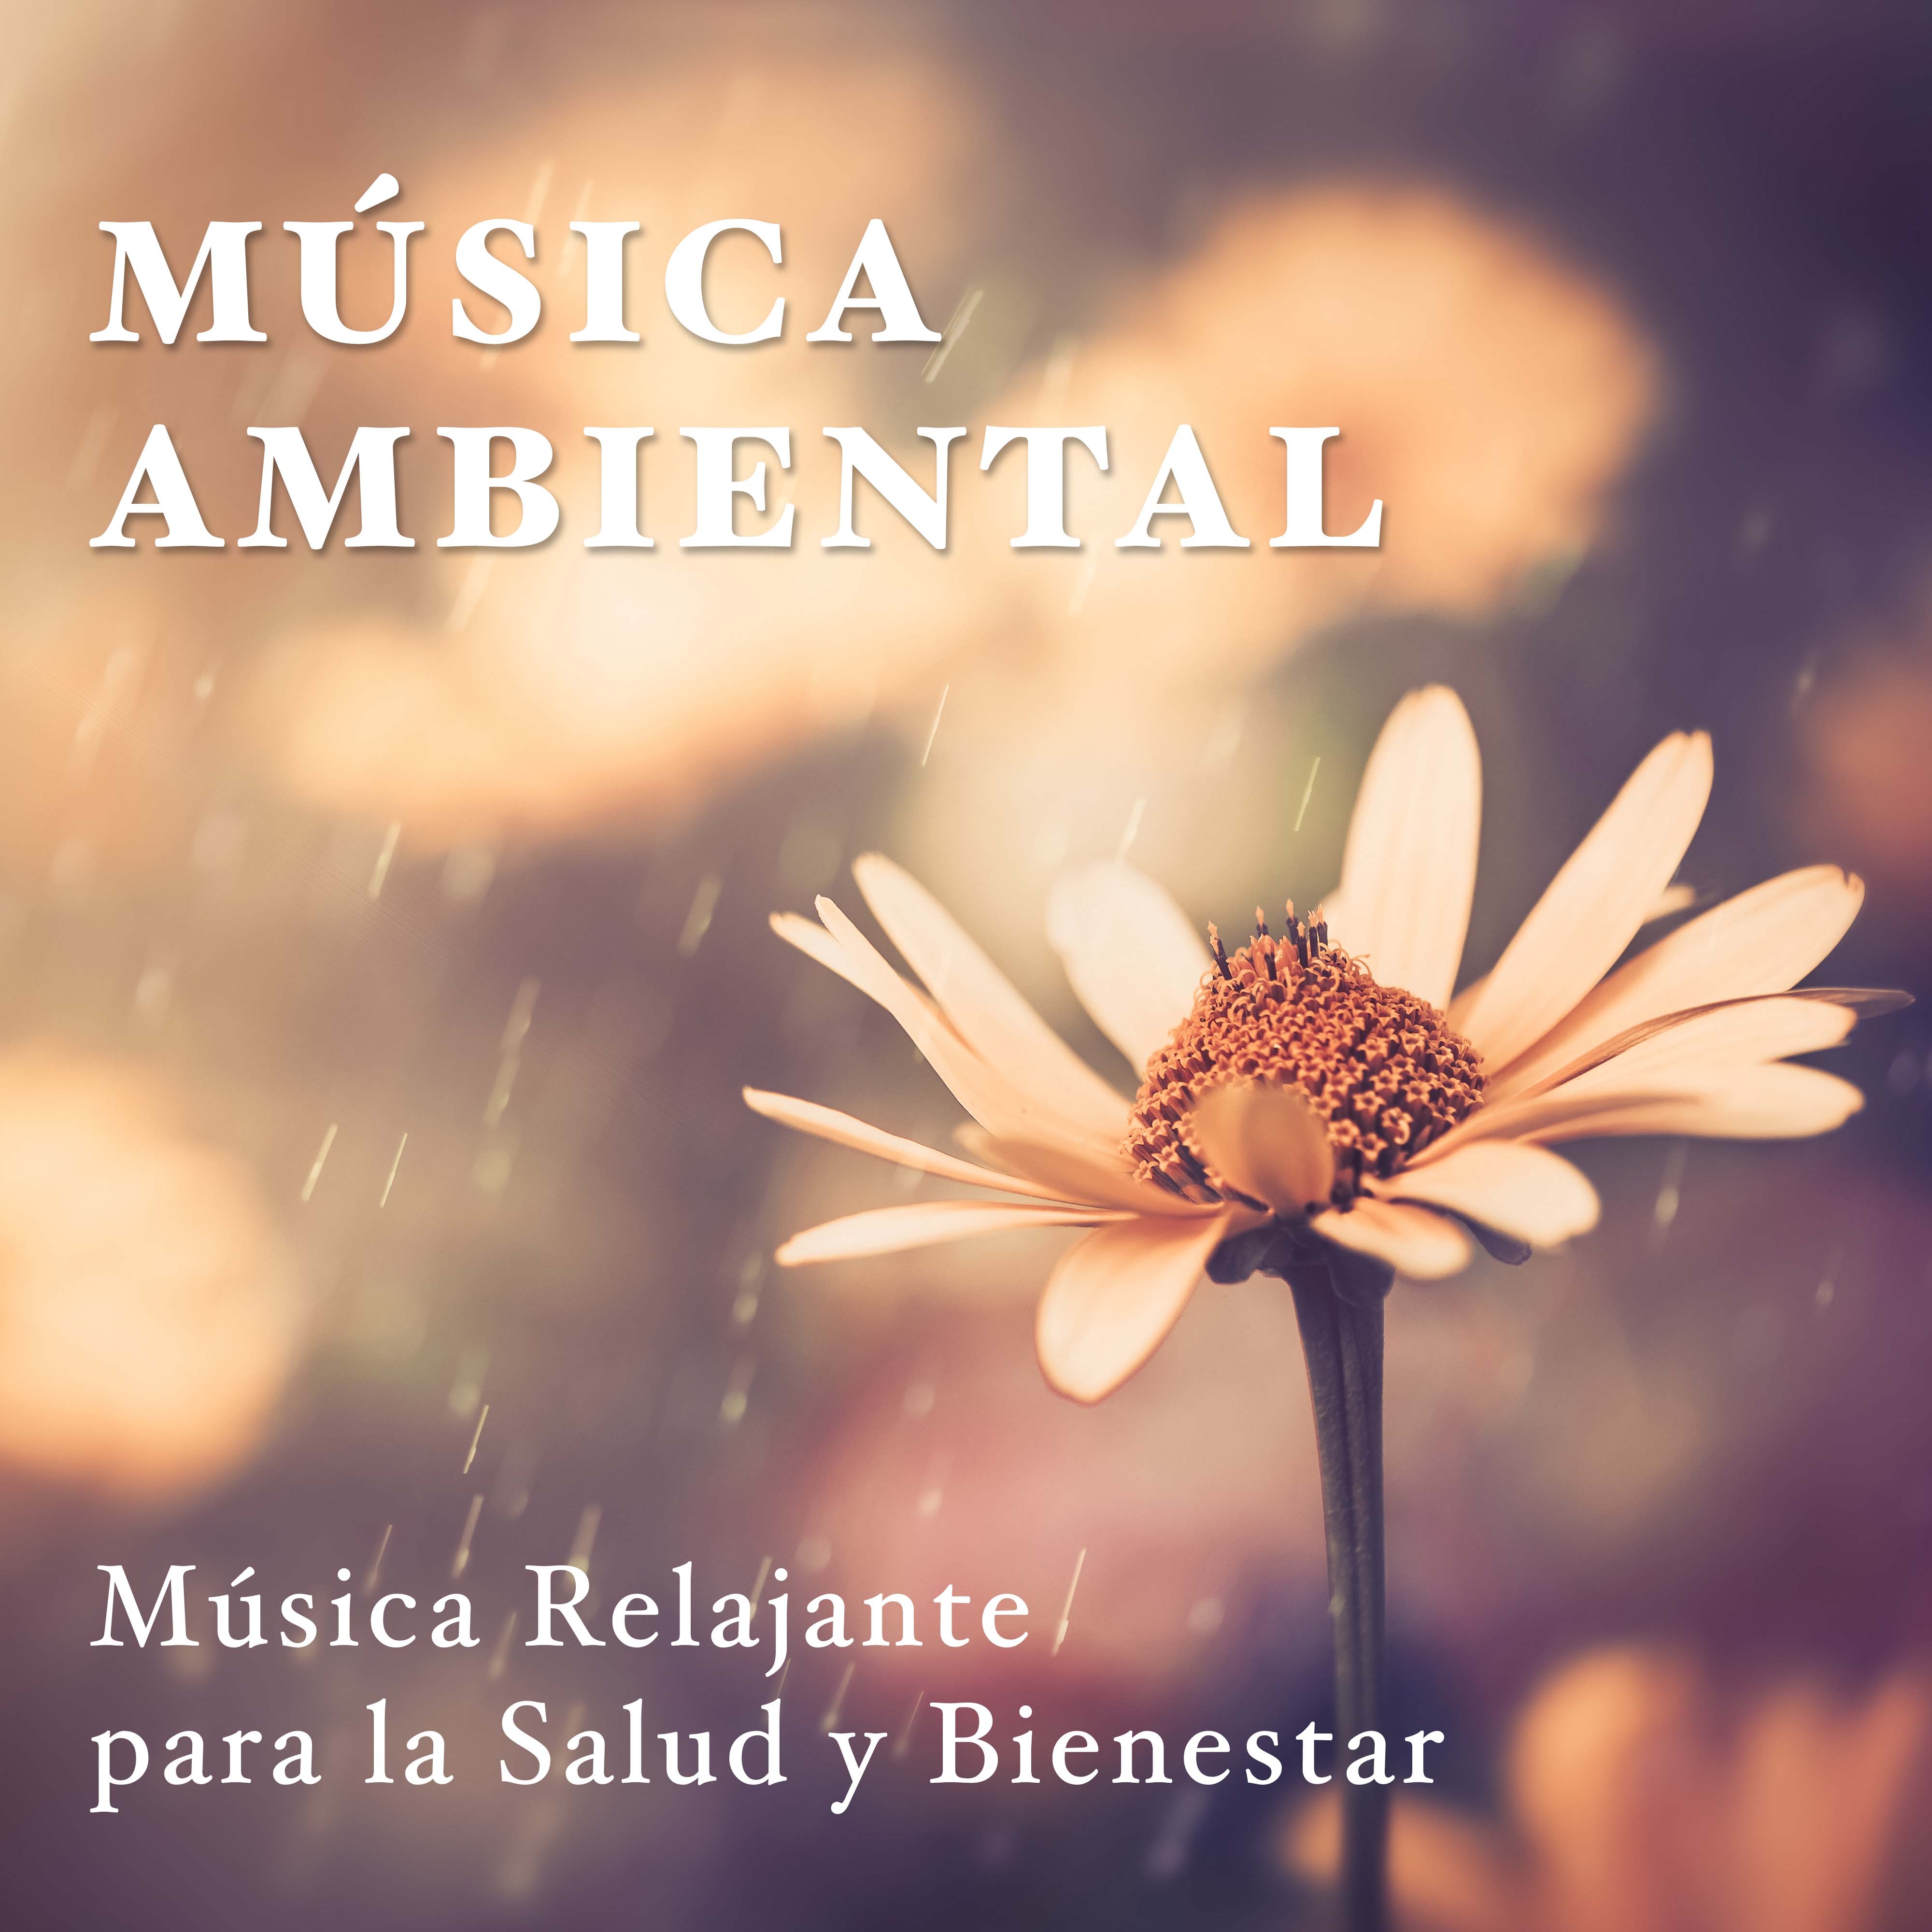 Musica Ambiental - Musica Relajante para la Salud y Bienestar